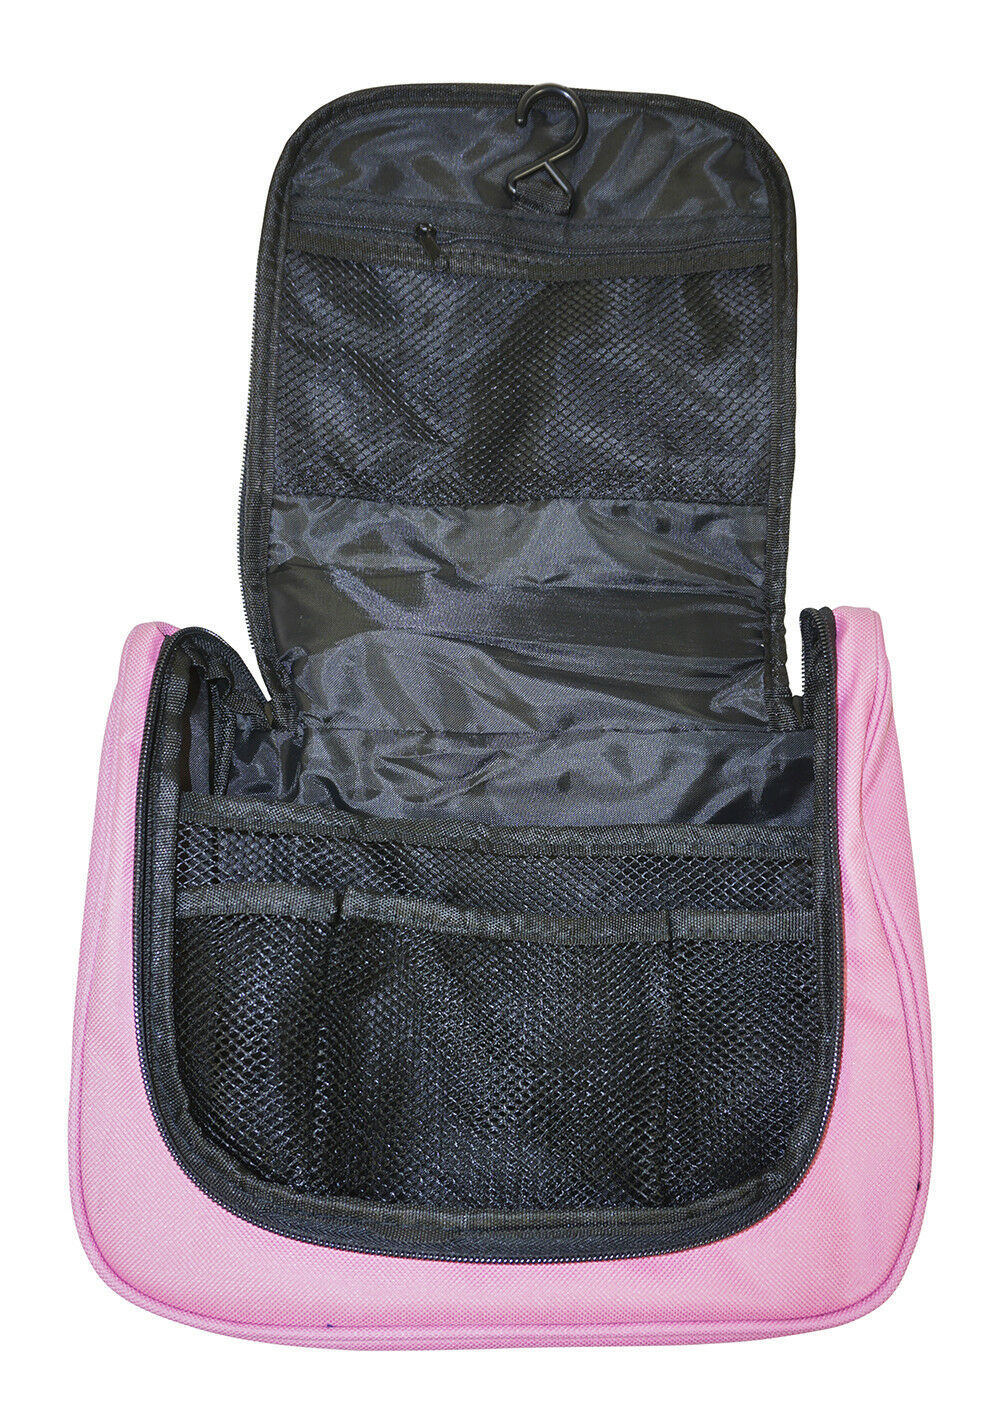 Wholesale Makeup Bags Cosmetic Lot Bulk Make Up Dozen 12 pieces Pink Canvas - Makeup Bags & Cases